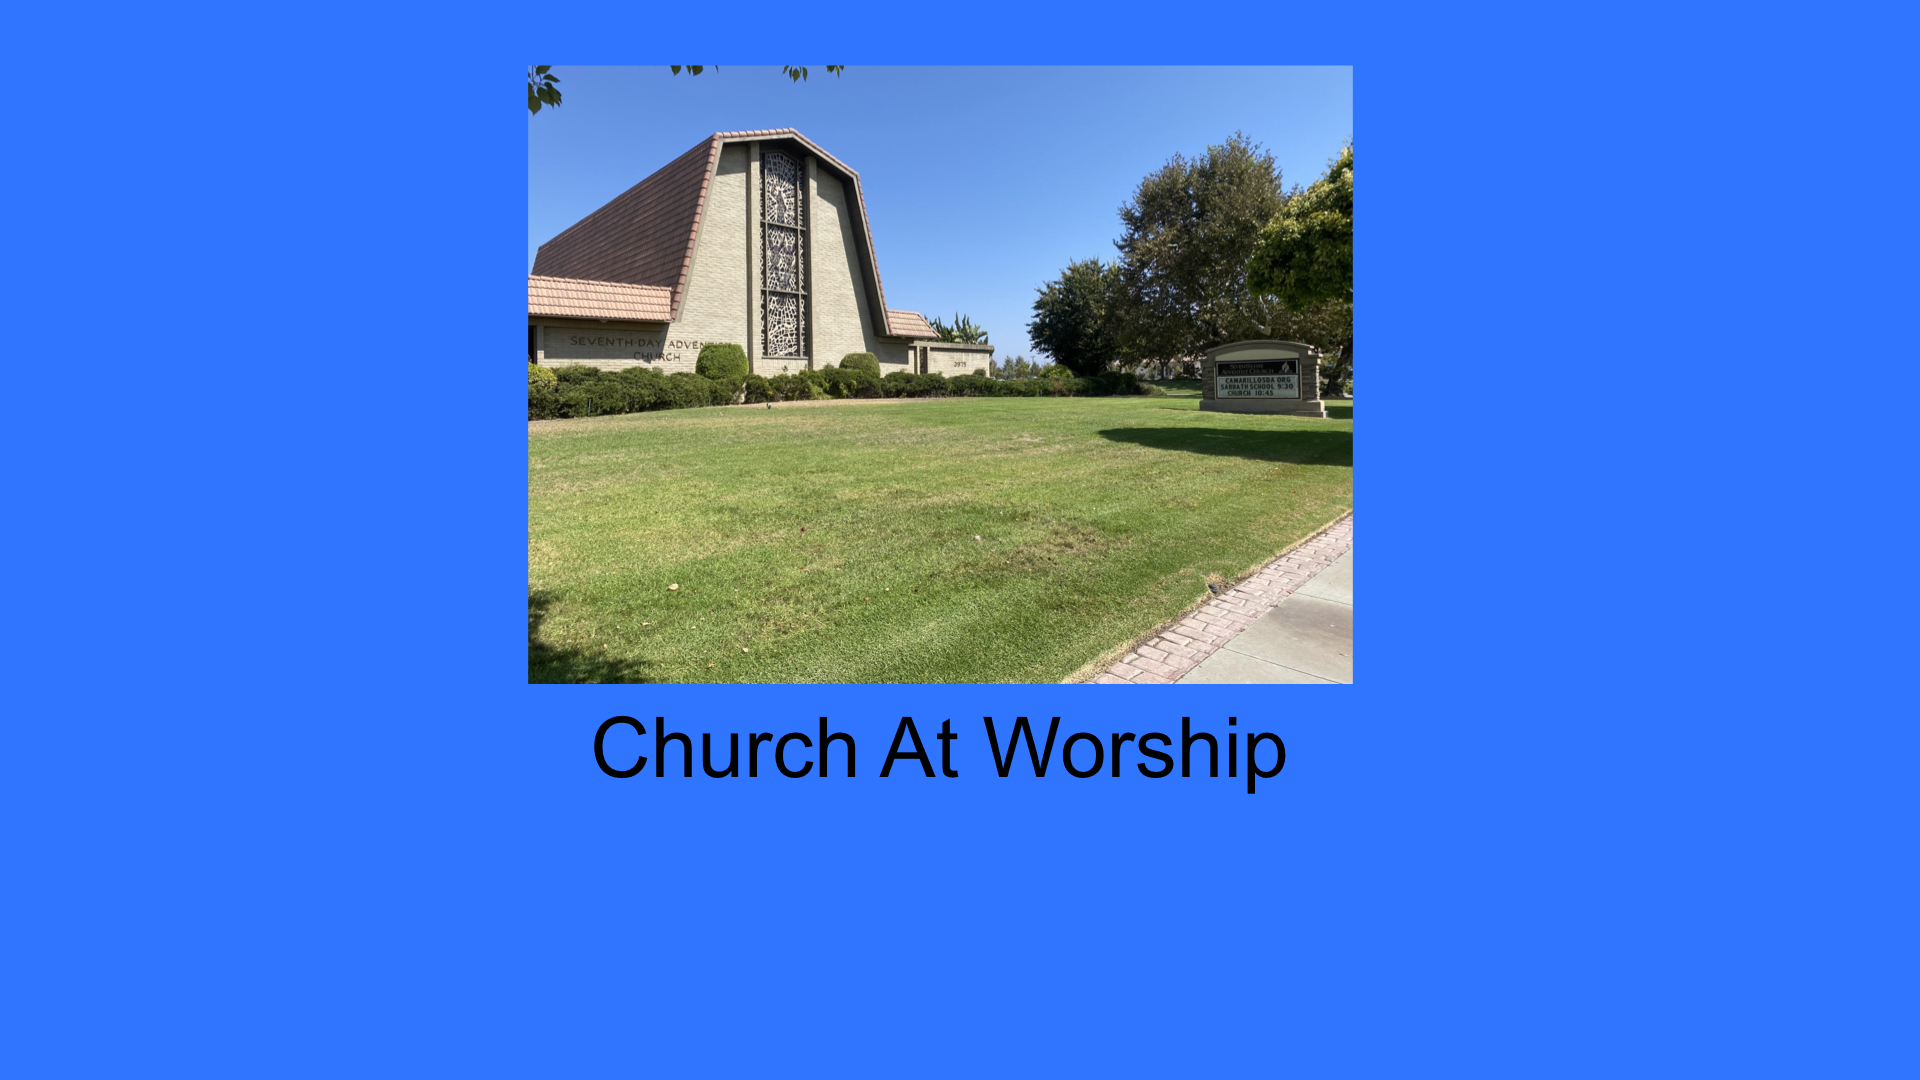 12/19/20 Church At Worship